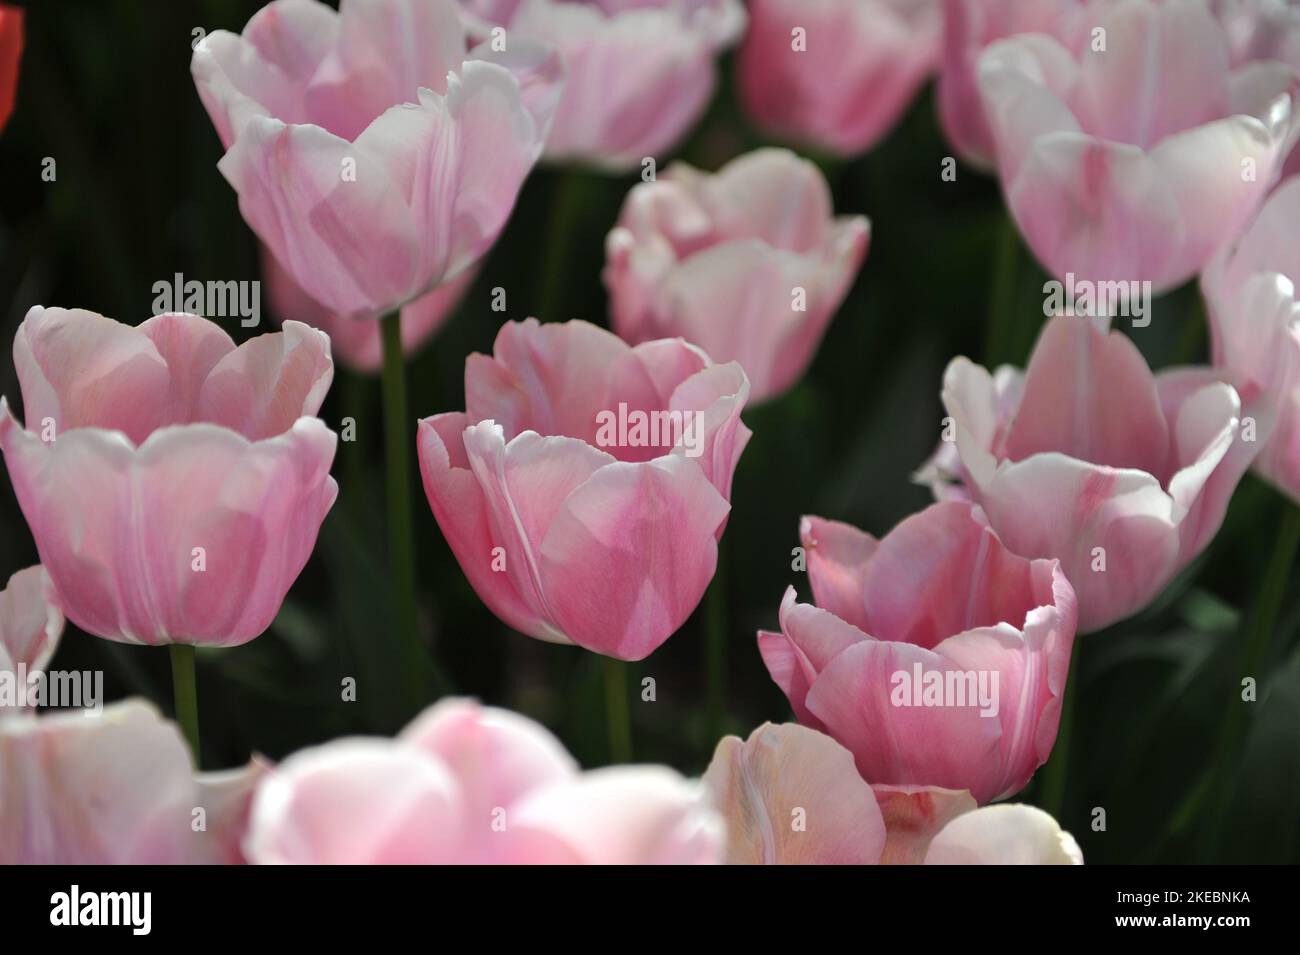 Tulipes de Triumph rose et blanc (Tulipa) Tohoku fleurissent dans un jardin en avril Banque D'Images